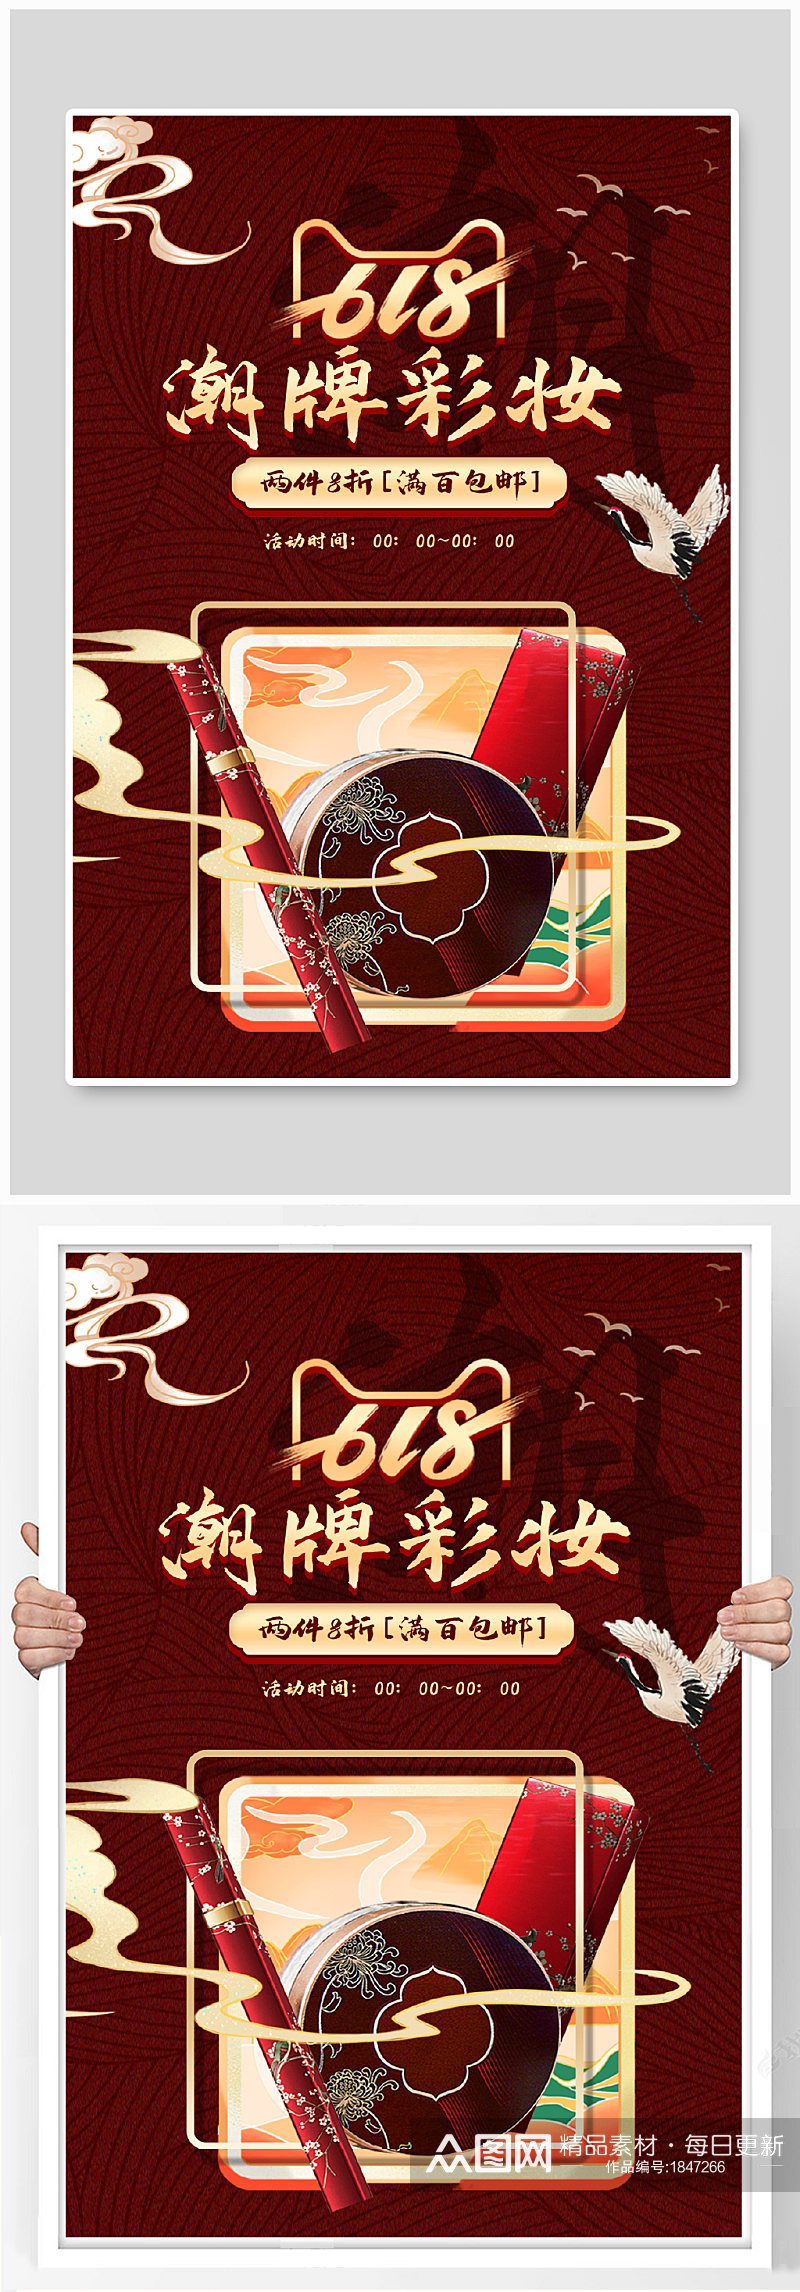 复古国潮中国风618年中大促彩妆海报模板素材